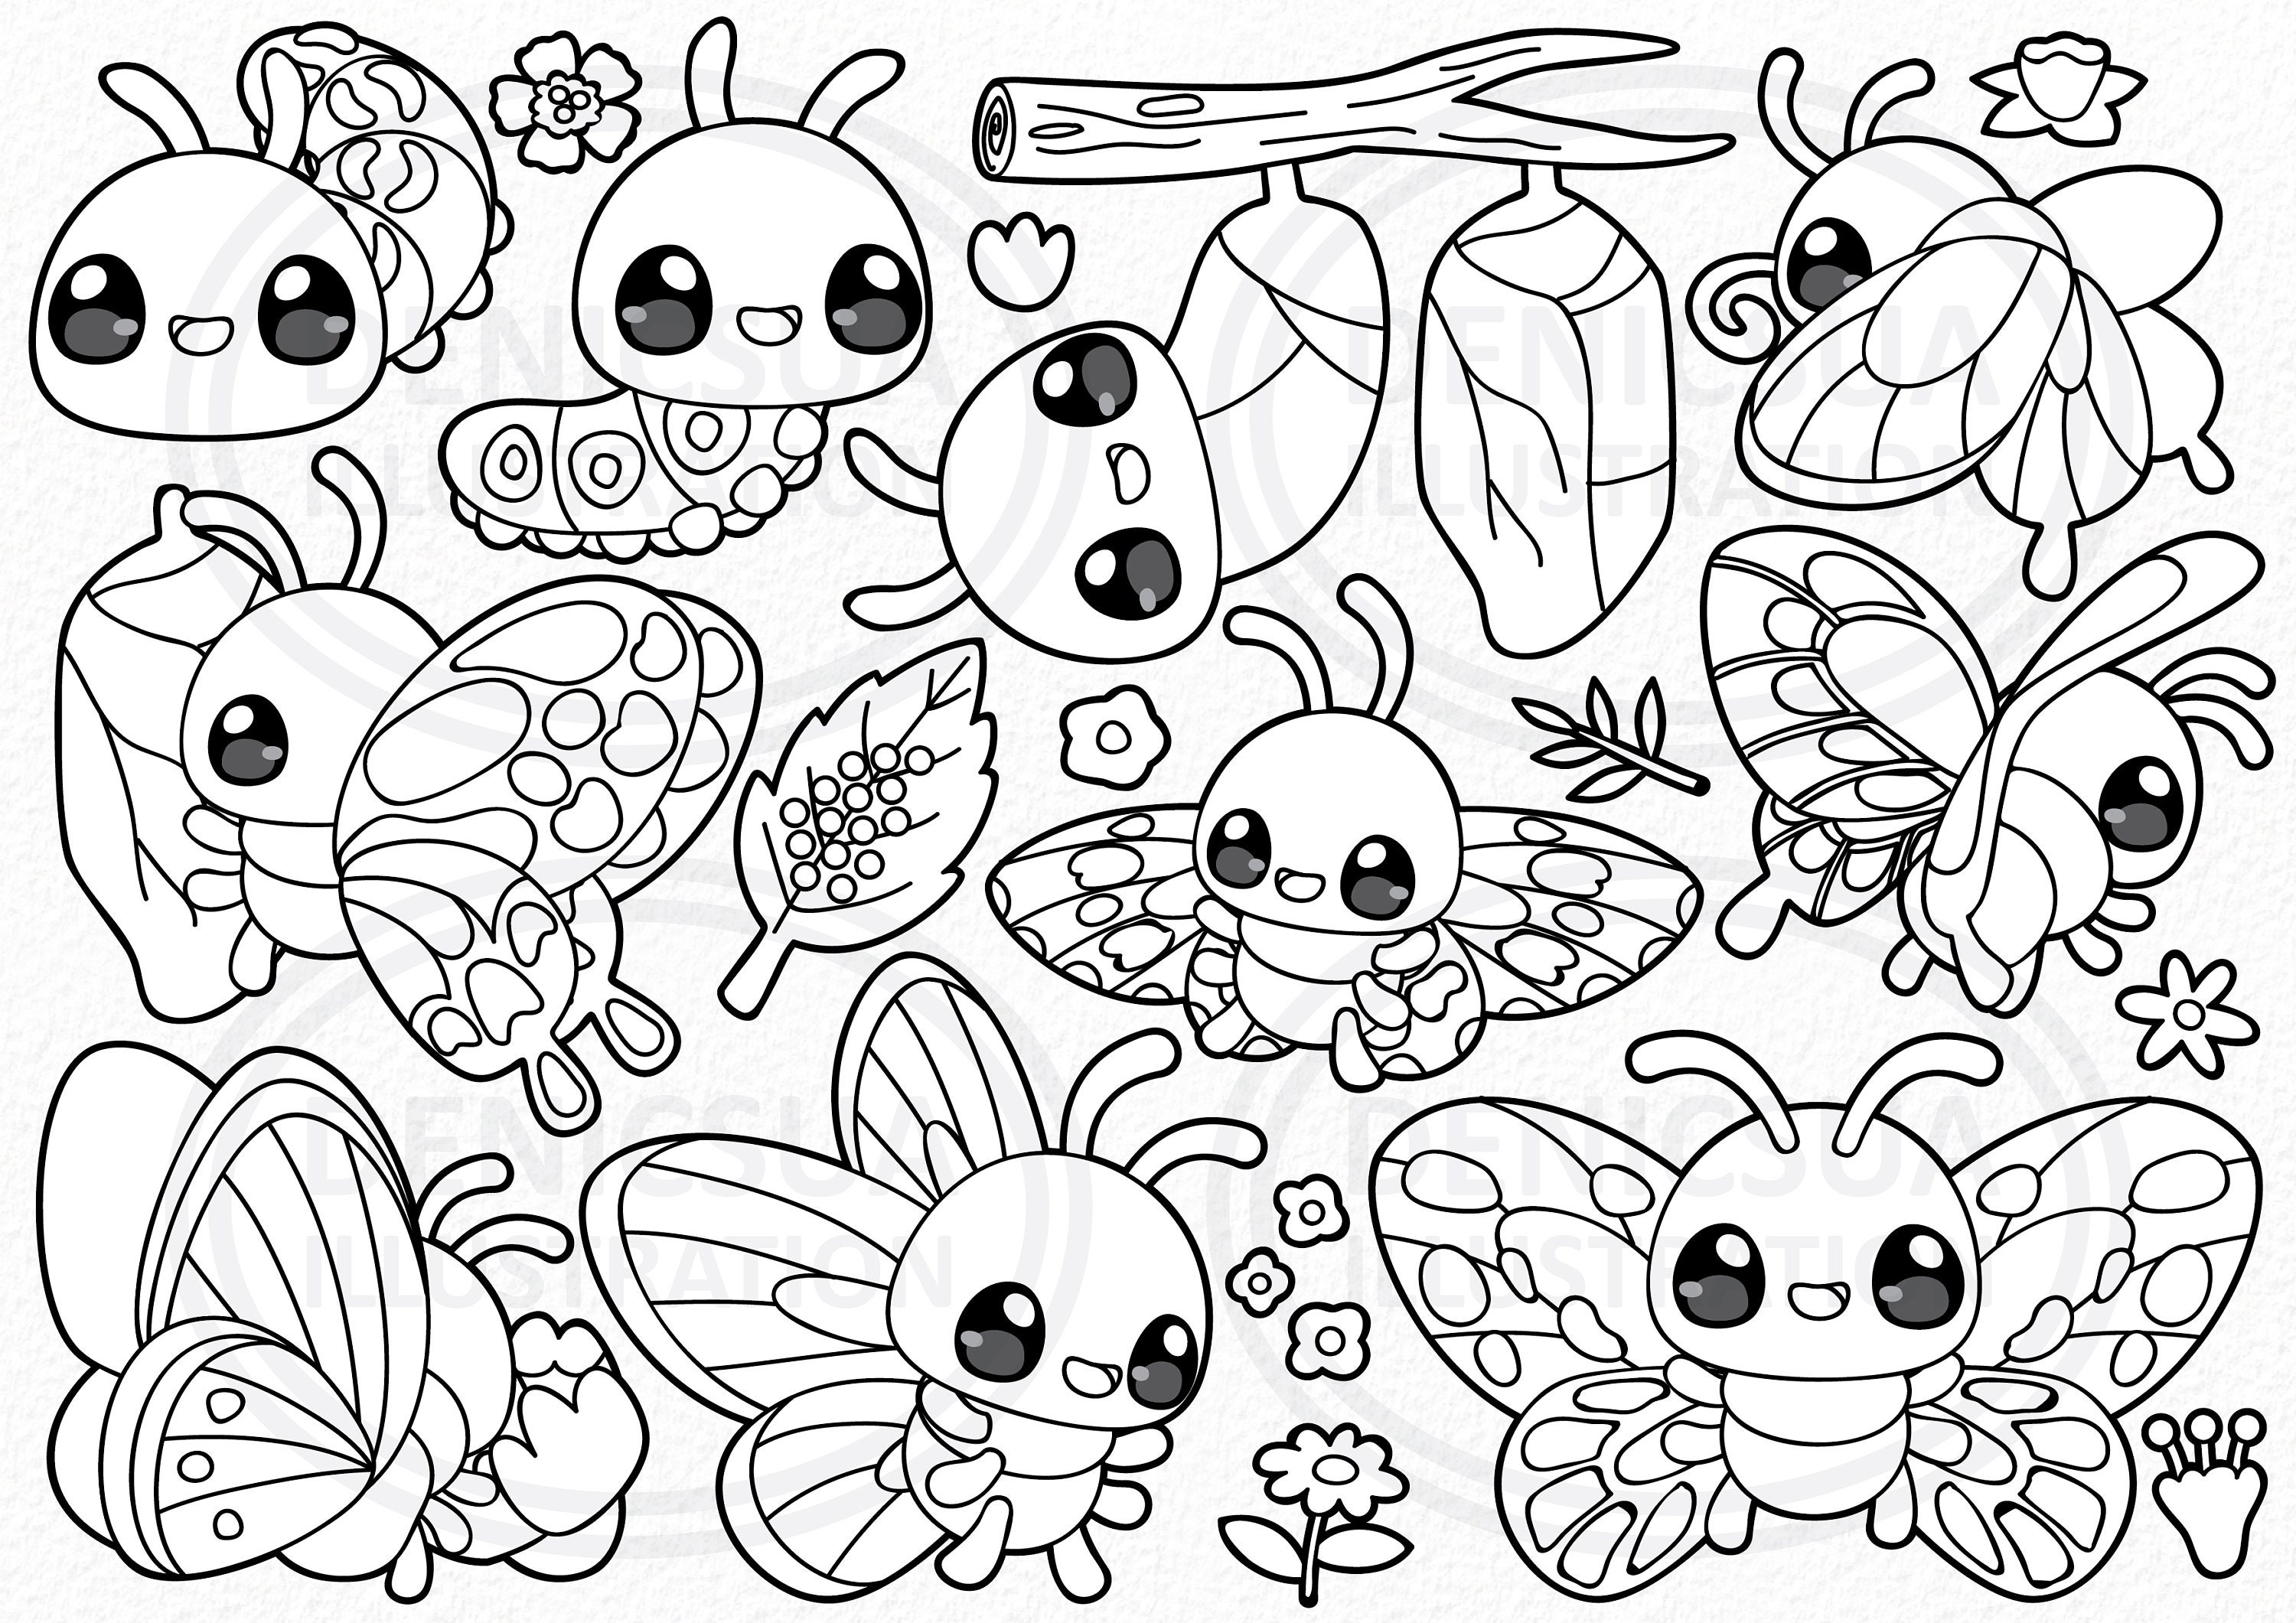 180 Desenhos kawaii para desenhar e colorir  Easy pokemon drawings, Cute  easy drawings, Cute drawings